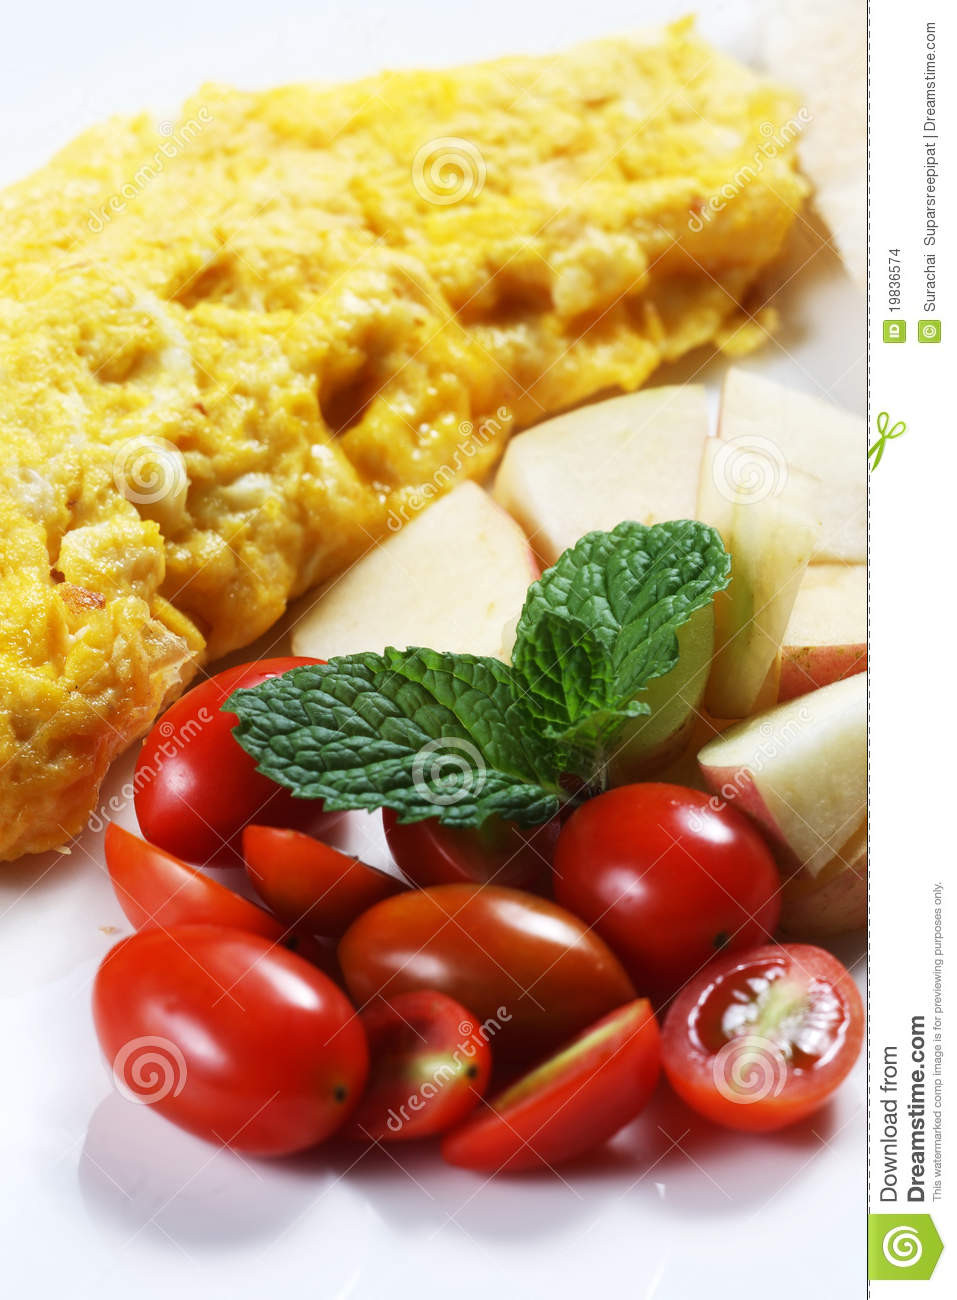 Healthy Low Cholesterol Breakfast
 Healthy Low fat Breakfast 01 Stock Image